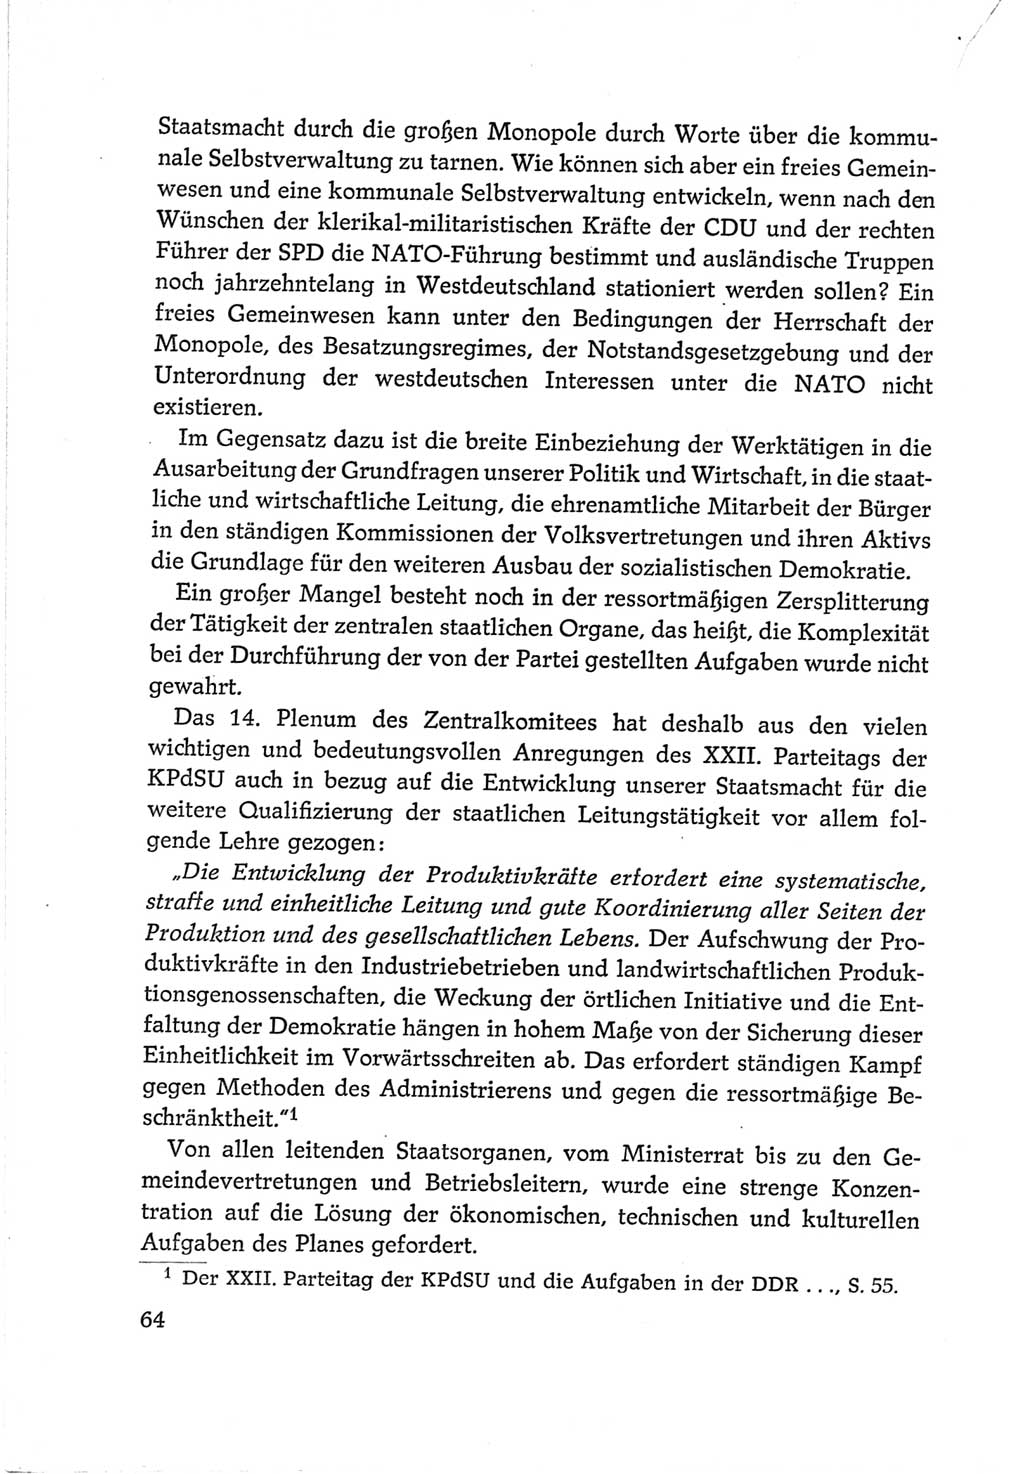 Protokoll der Verhandlungen des Ⅵ. Parteitages der Sozialistischen Einheitspartei Deutschlands (SED) [Deutsche Demokratische Republik (DDR)] 1963, Band Ⅳ, Seite 64 (Prot. Verh. Ⅵ. PT SED DDR 1963, Bd. Ⅳ, S. 64)